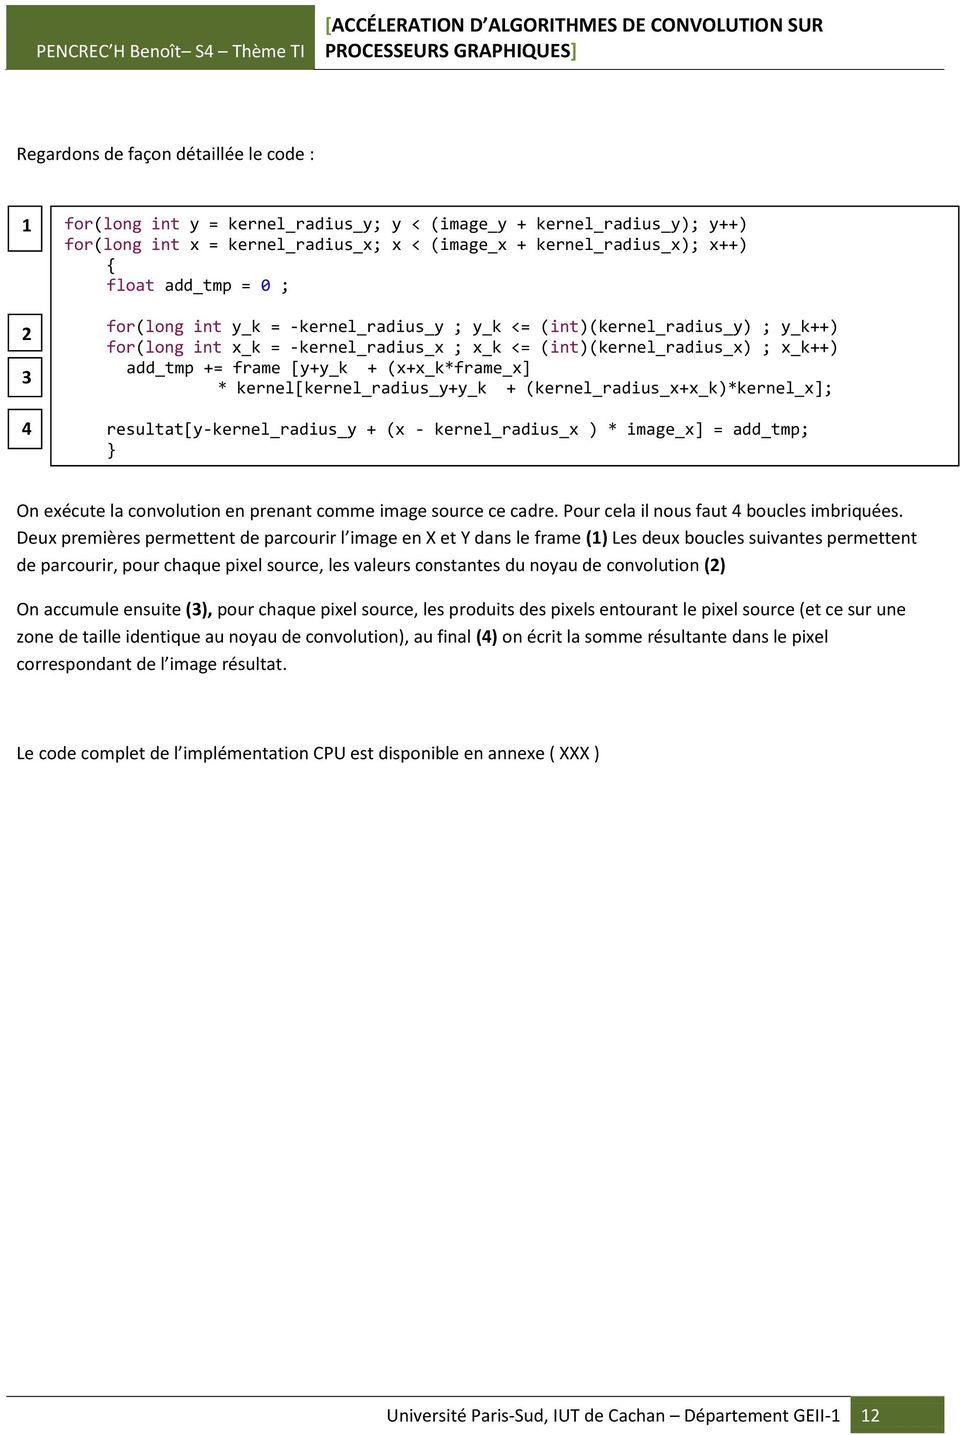 (x+x_k*frame_x] * kernel[kernel_radius_y+y_k + (kernel_radius_x+x_k)*kernel_x]; resultat[y- kernel_radius_y + (x - kernel_radius_x ) * image_x] = add_tmp; } On exécute la convolution en prenant comme